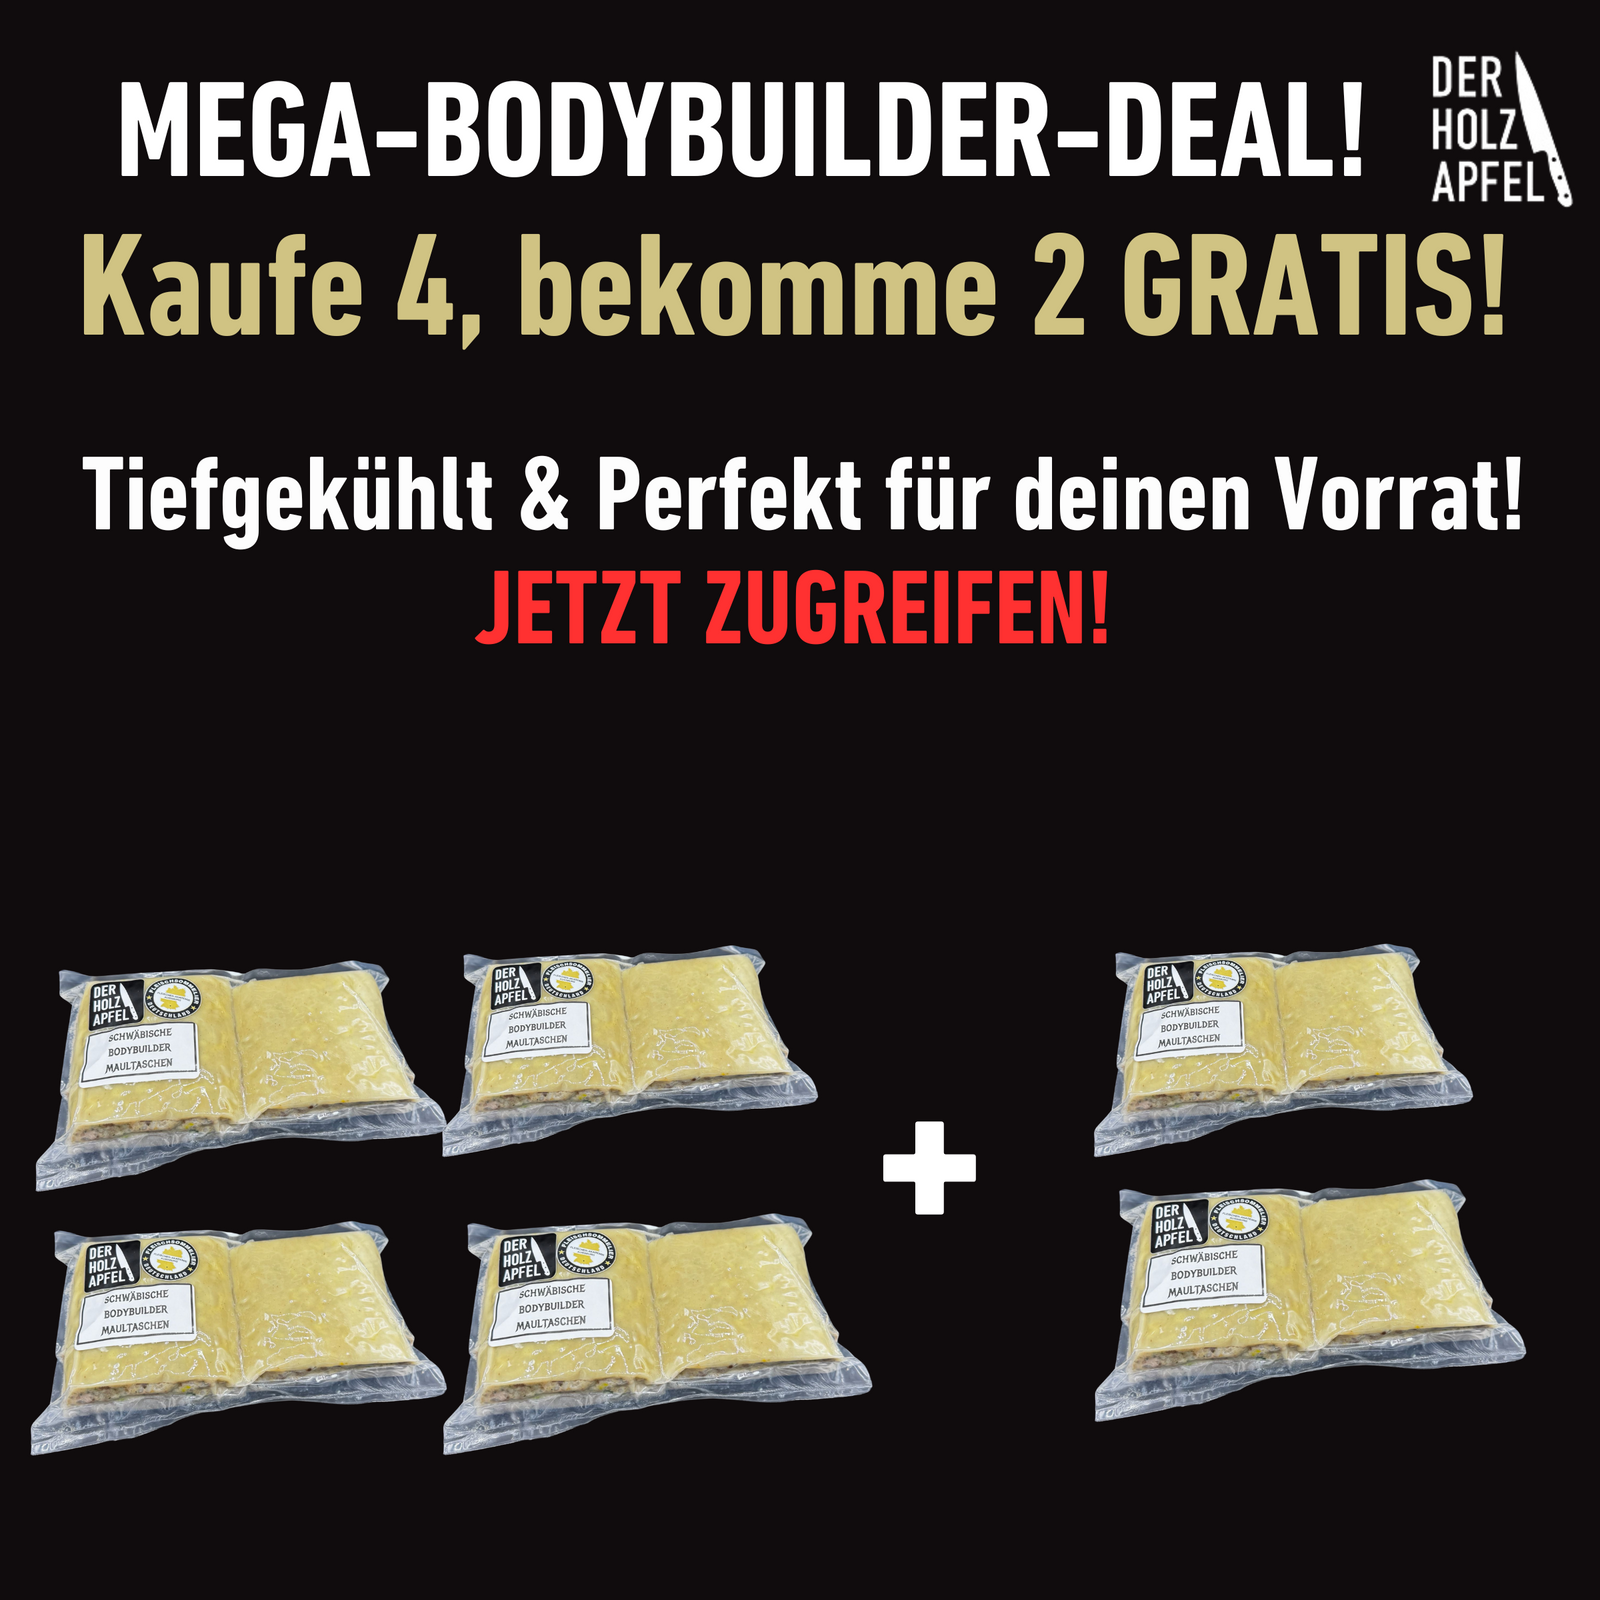 MEGA-BODYBUILDER-DEAL: Schwäbische Bodybuilder Maultaschen – Tiefgekühlt